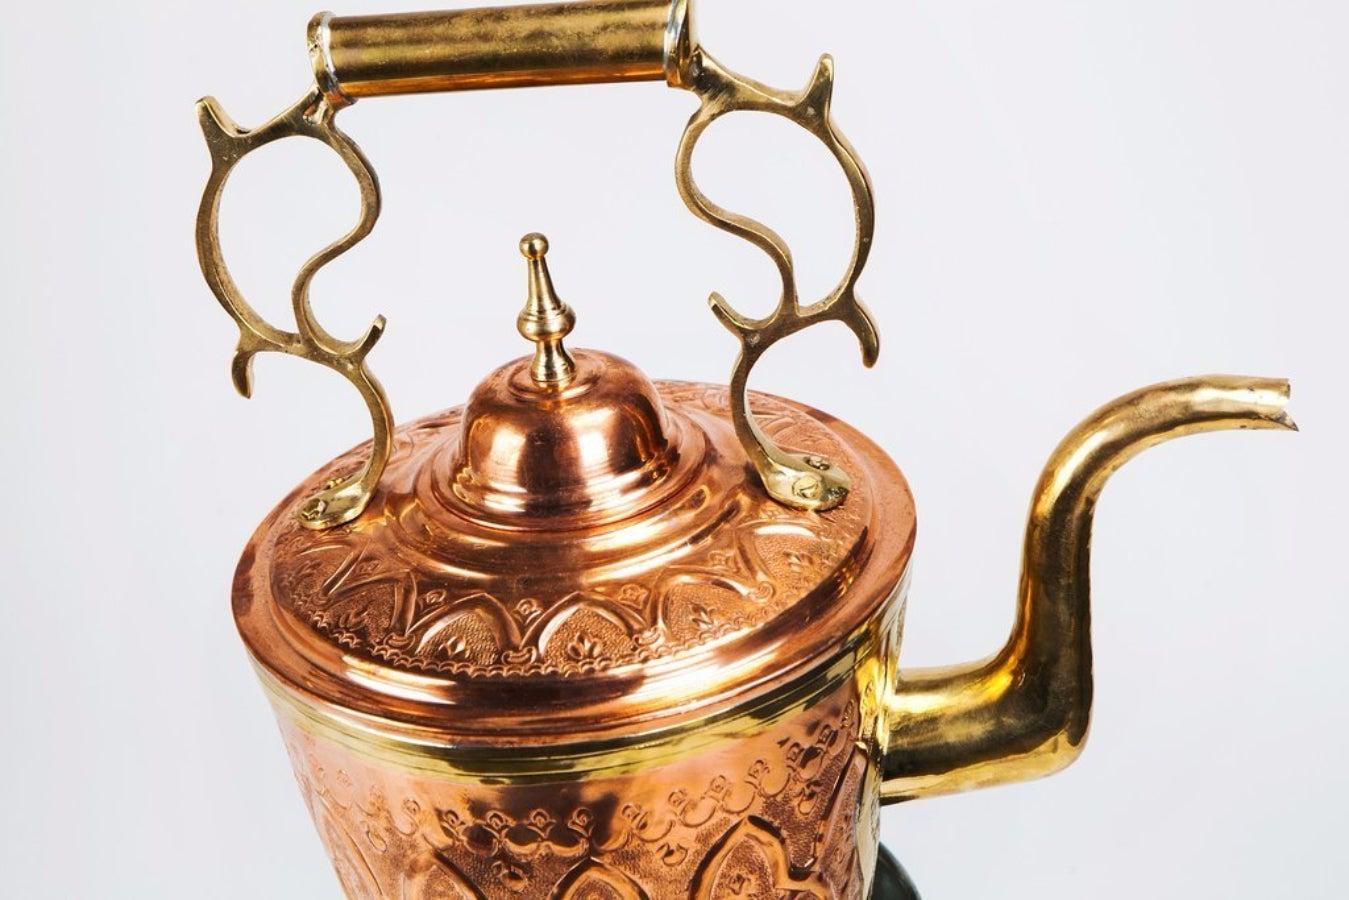 Dieser maurische Mid-Century  teekanne auf Kessel ist aus rotem Kupfer und Messing gefertigt und steht auf einem wunderschön geschnitzten Kessel / Sockel und ist eine wahre Schönheit. Dieses von Meisterhand mit viel Sorgfalt und Aufmerksamkeit